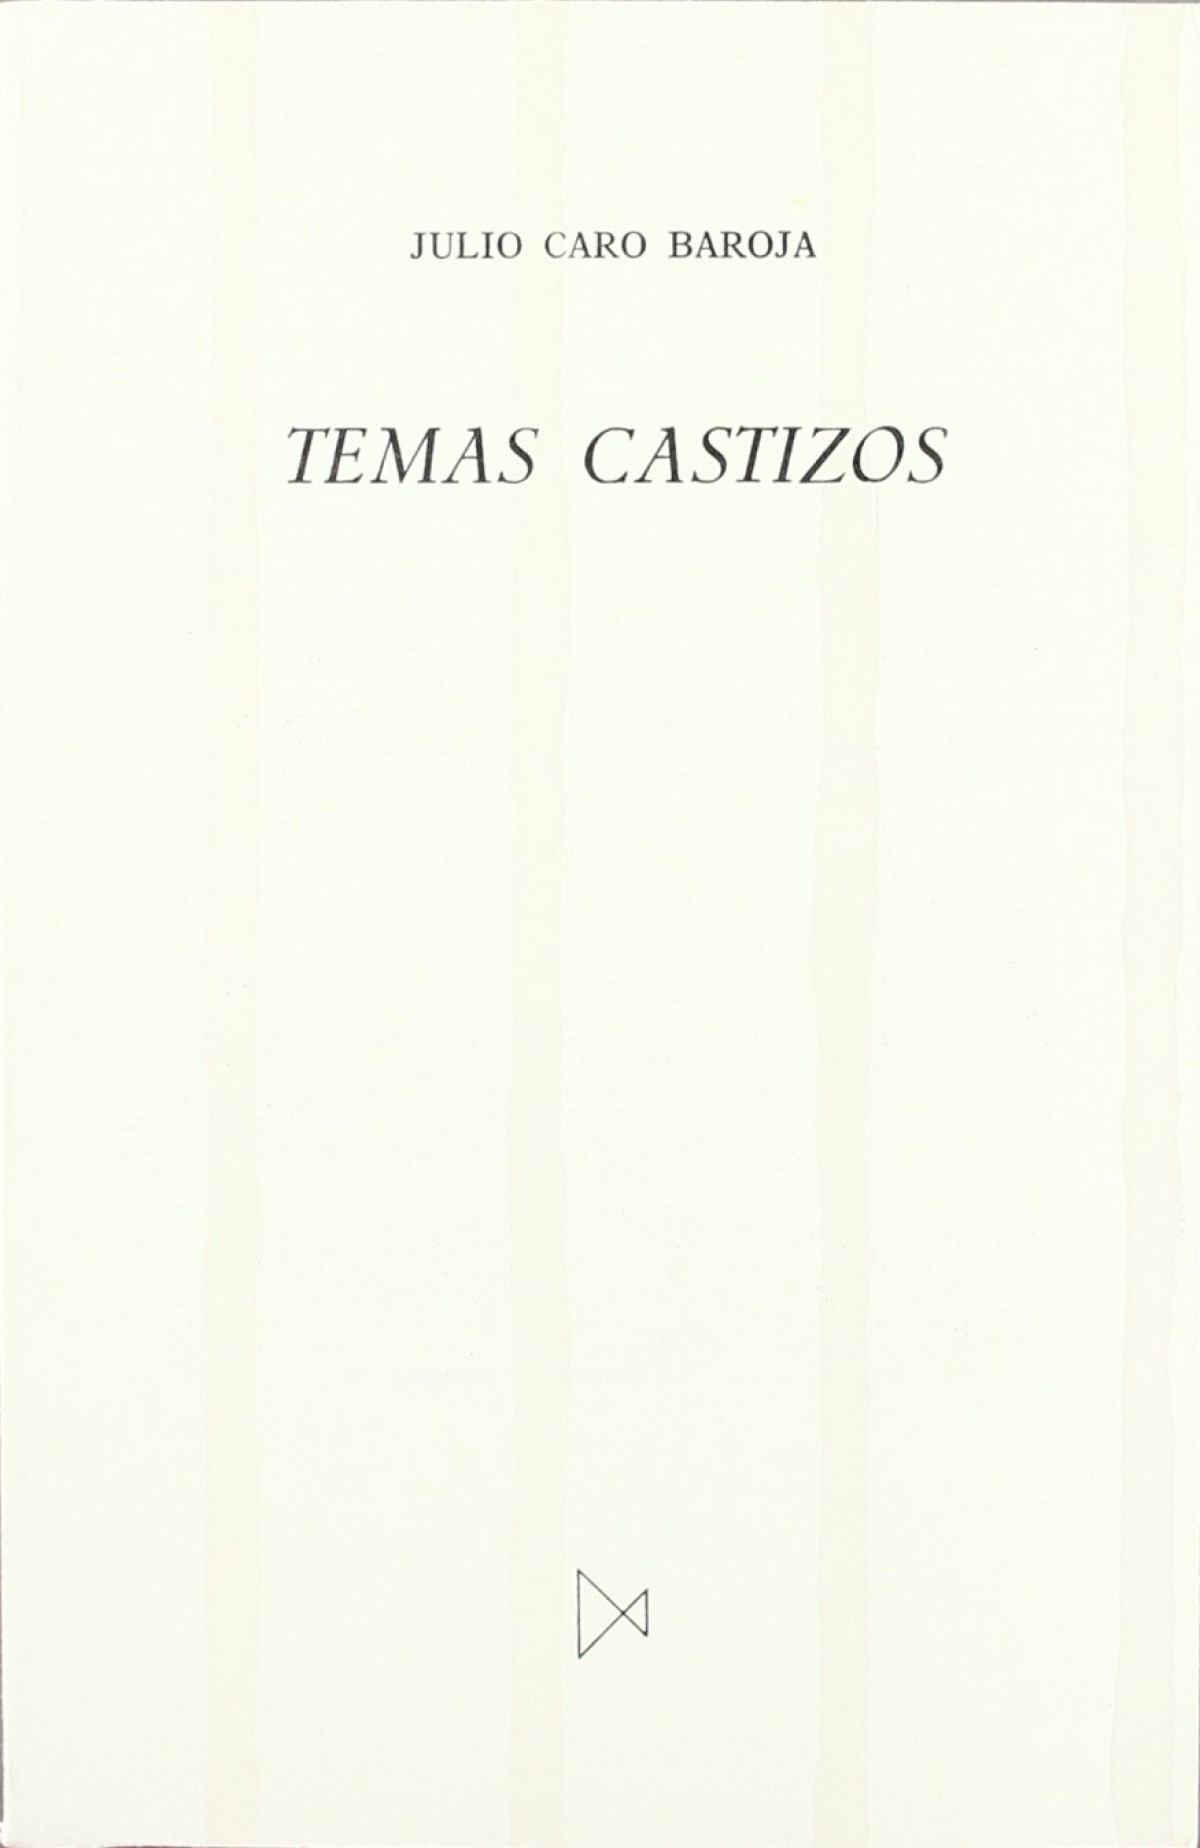 Temas castizos - Caro Baroja, Julio